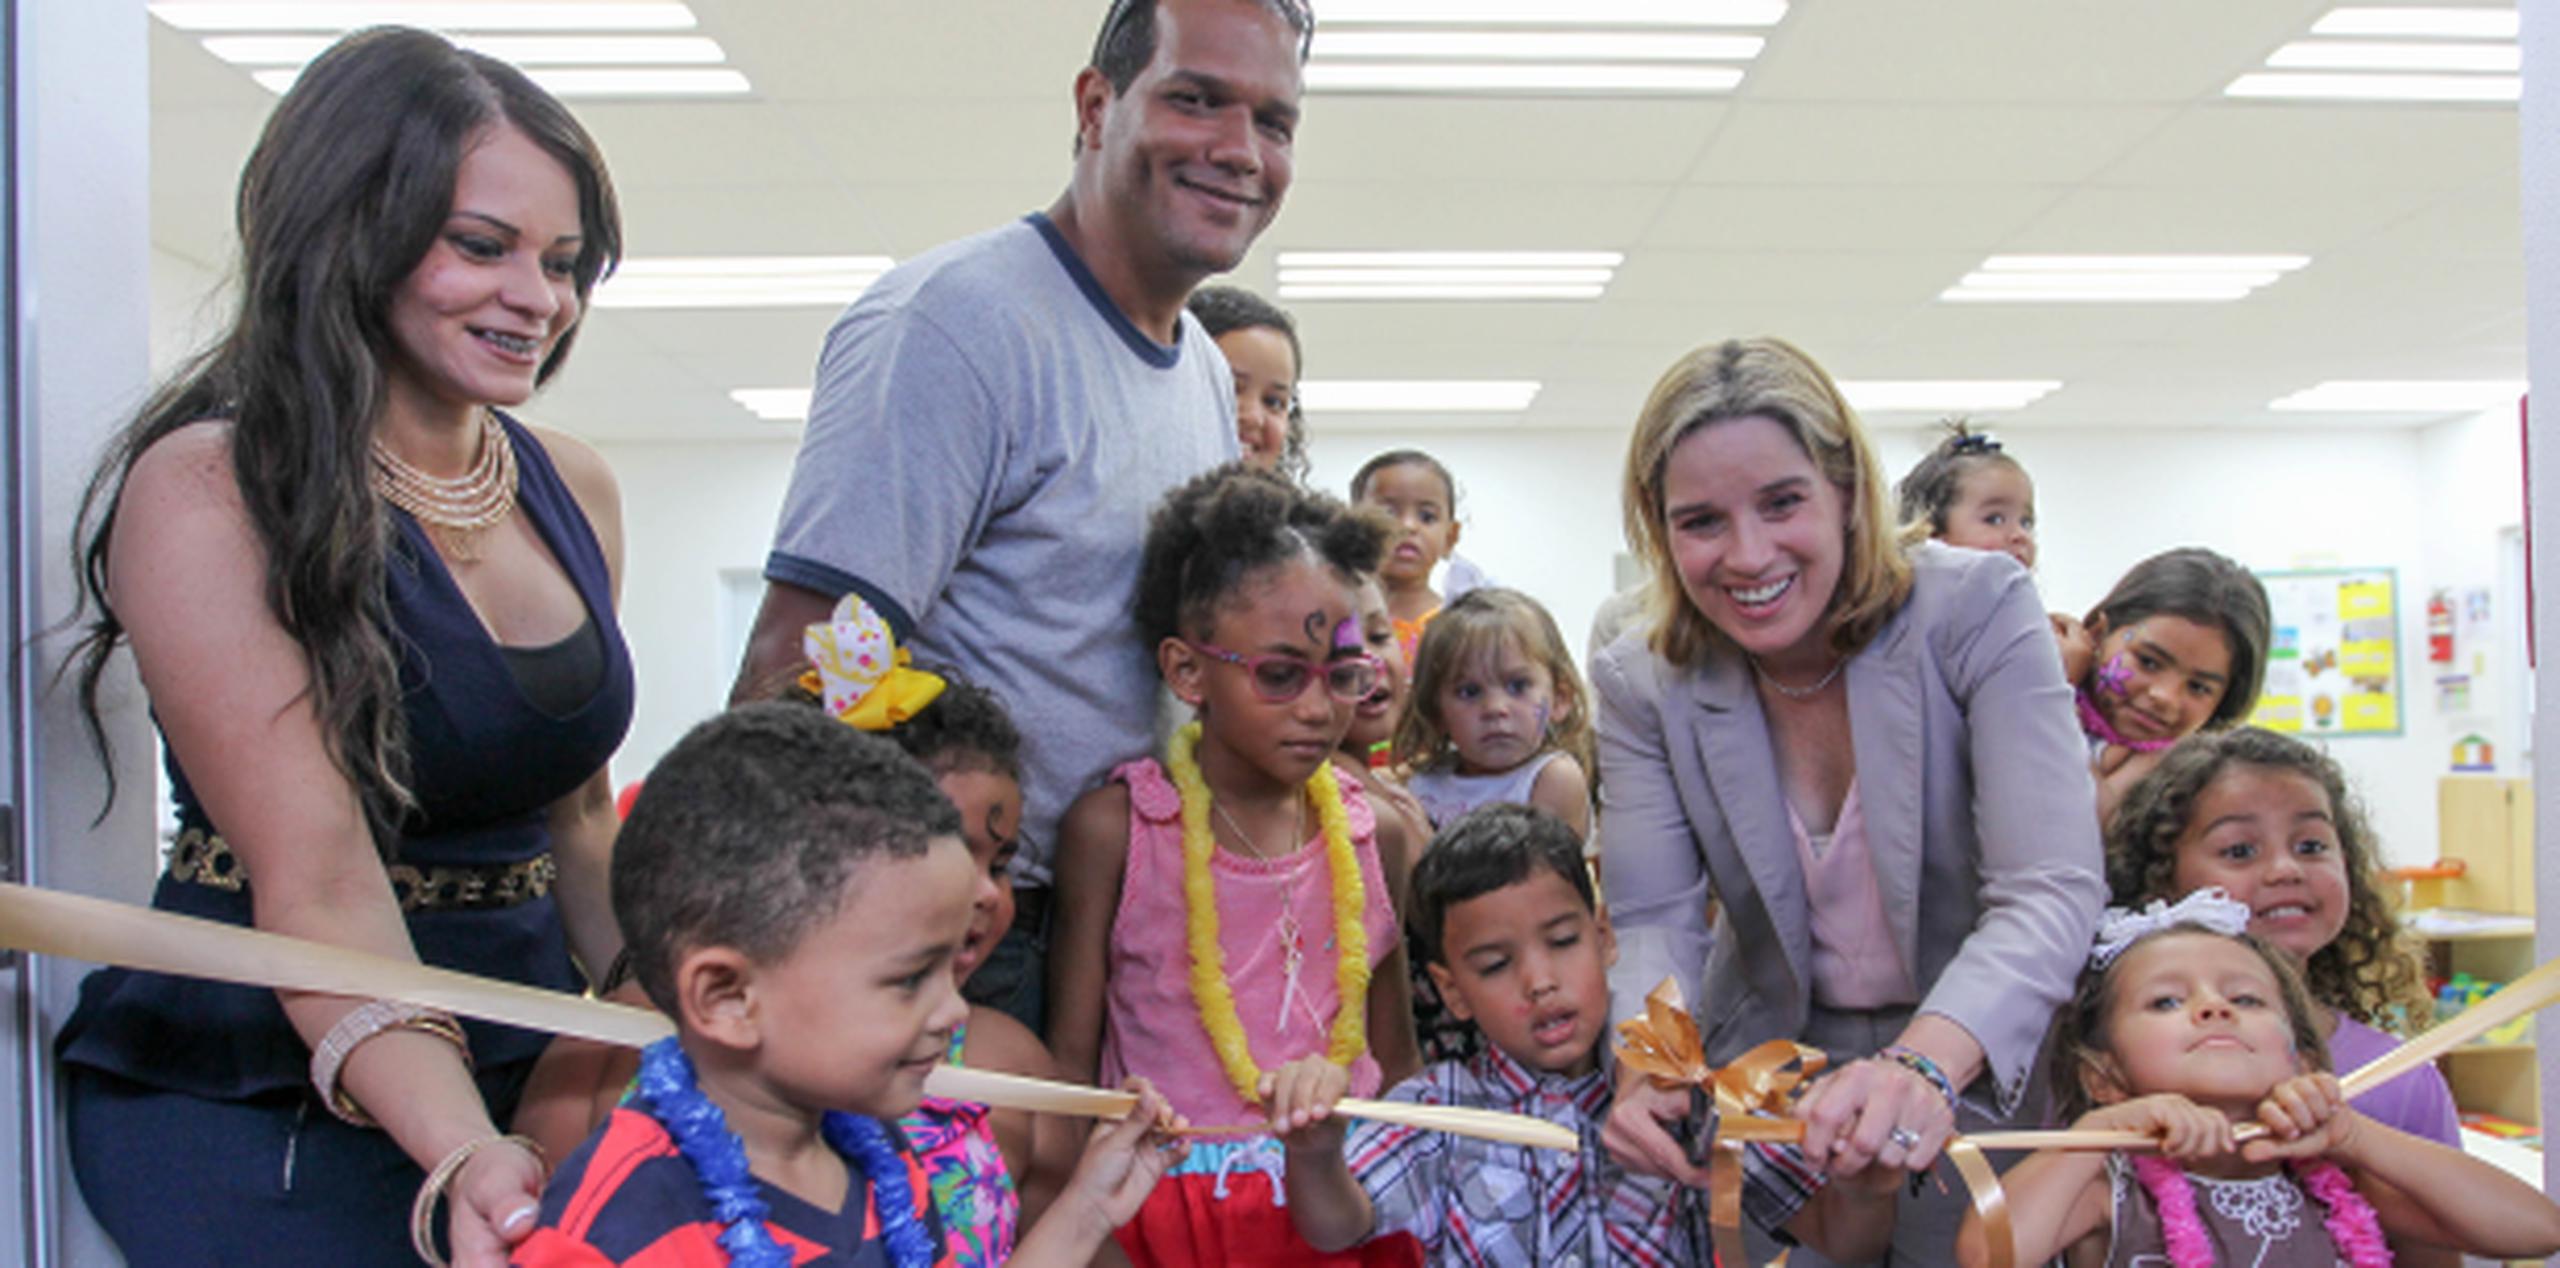 La alcaldesa Carmen Yulín Cruz inaugura la escuela junto a estudiantes preescolares. (Agencia EFE)